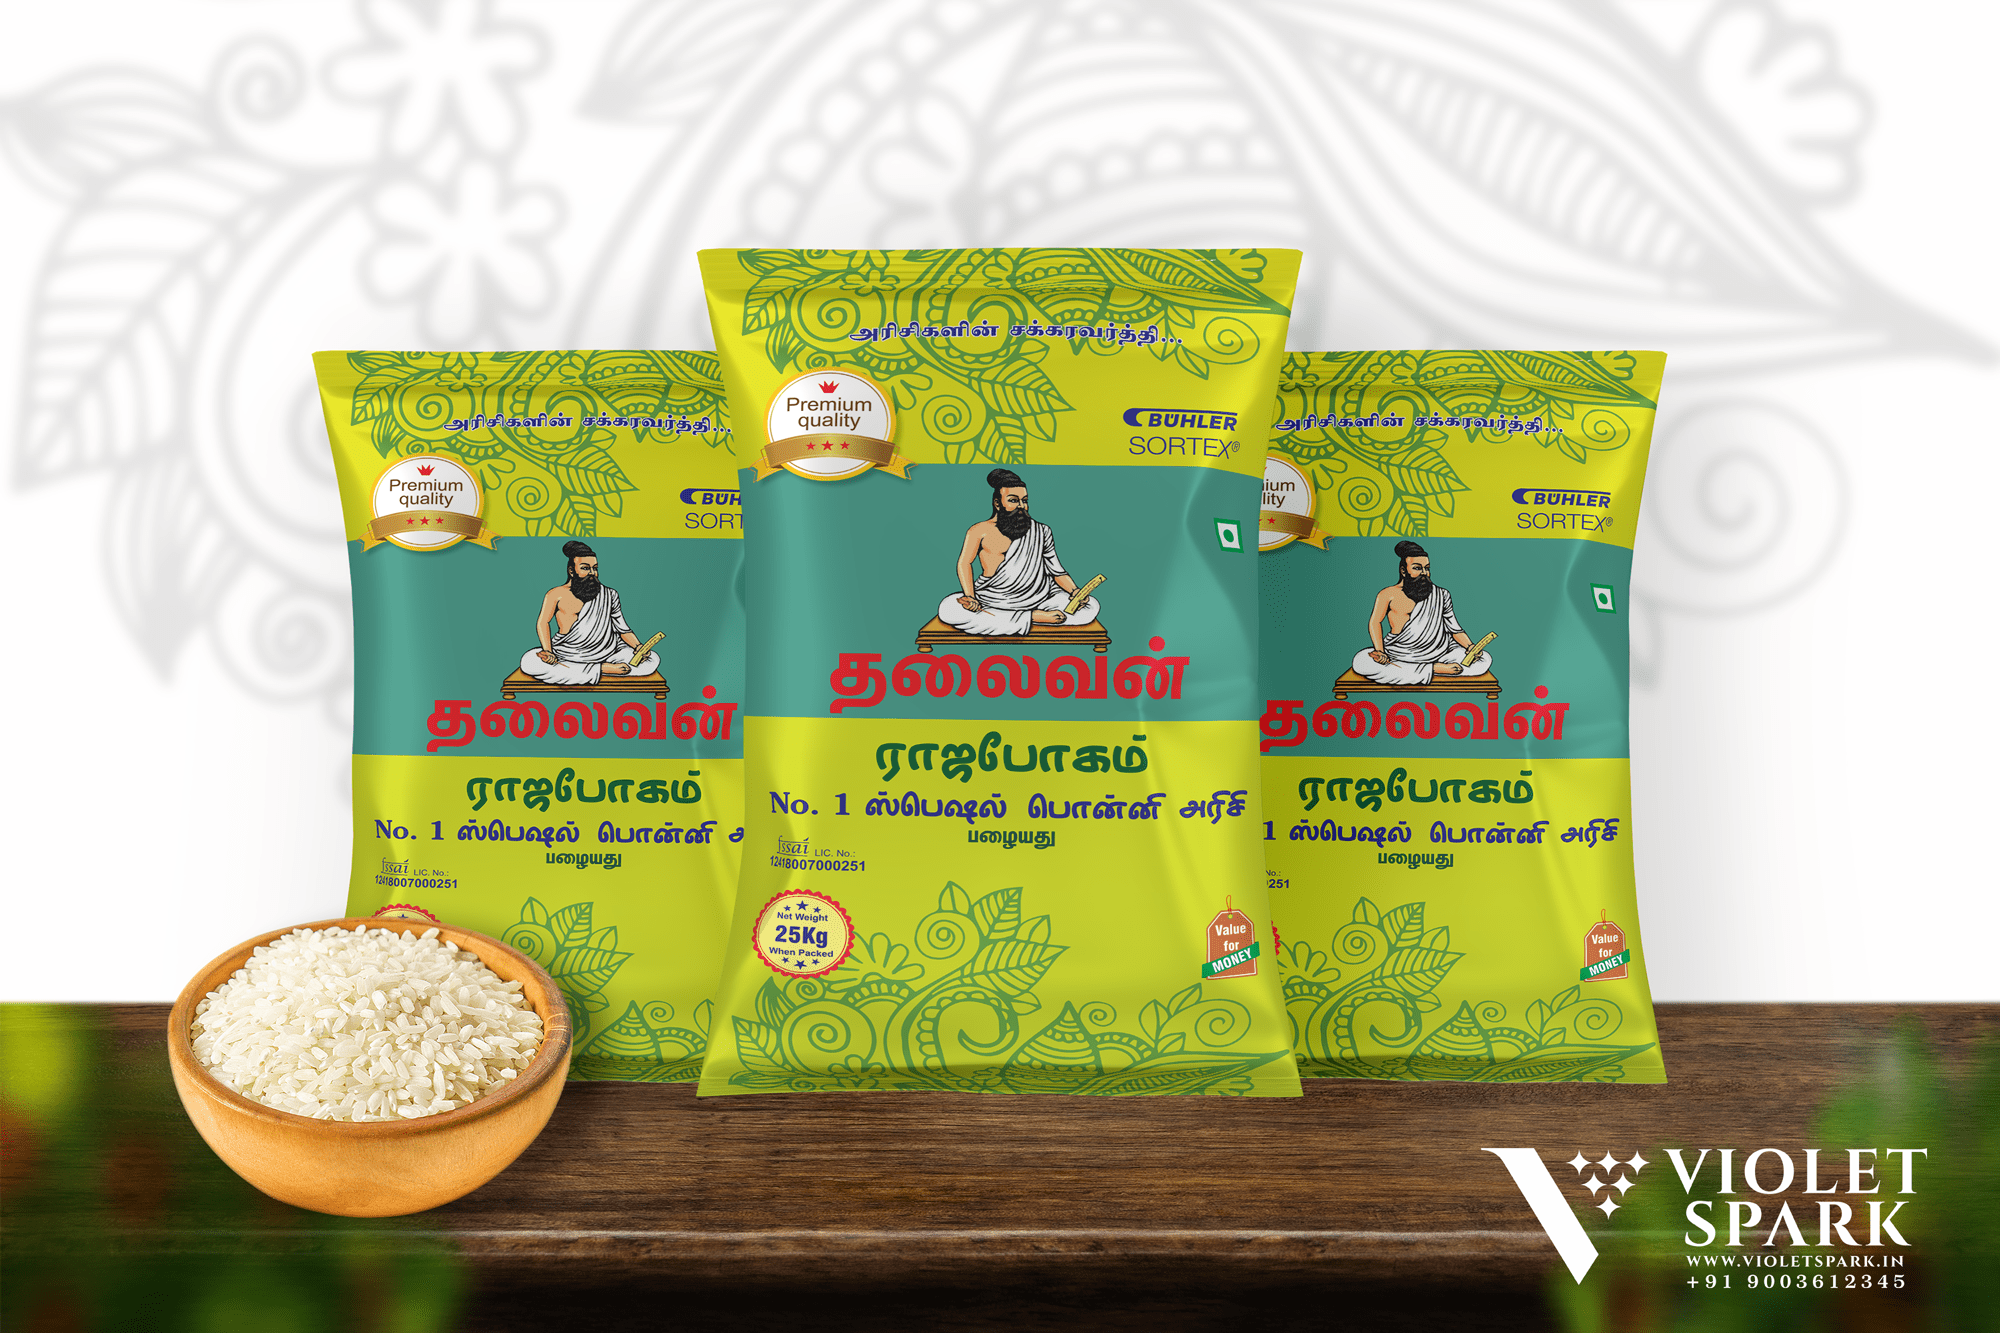 Thalaivan Brand Rajabhogam Rice Bags Branding & Packaging Design in Salem by Violet Spark